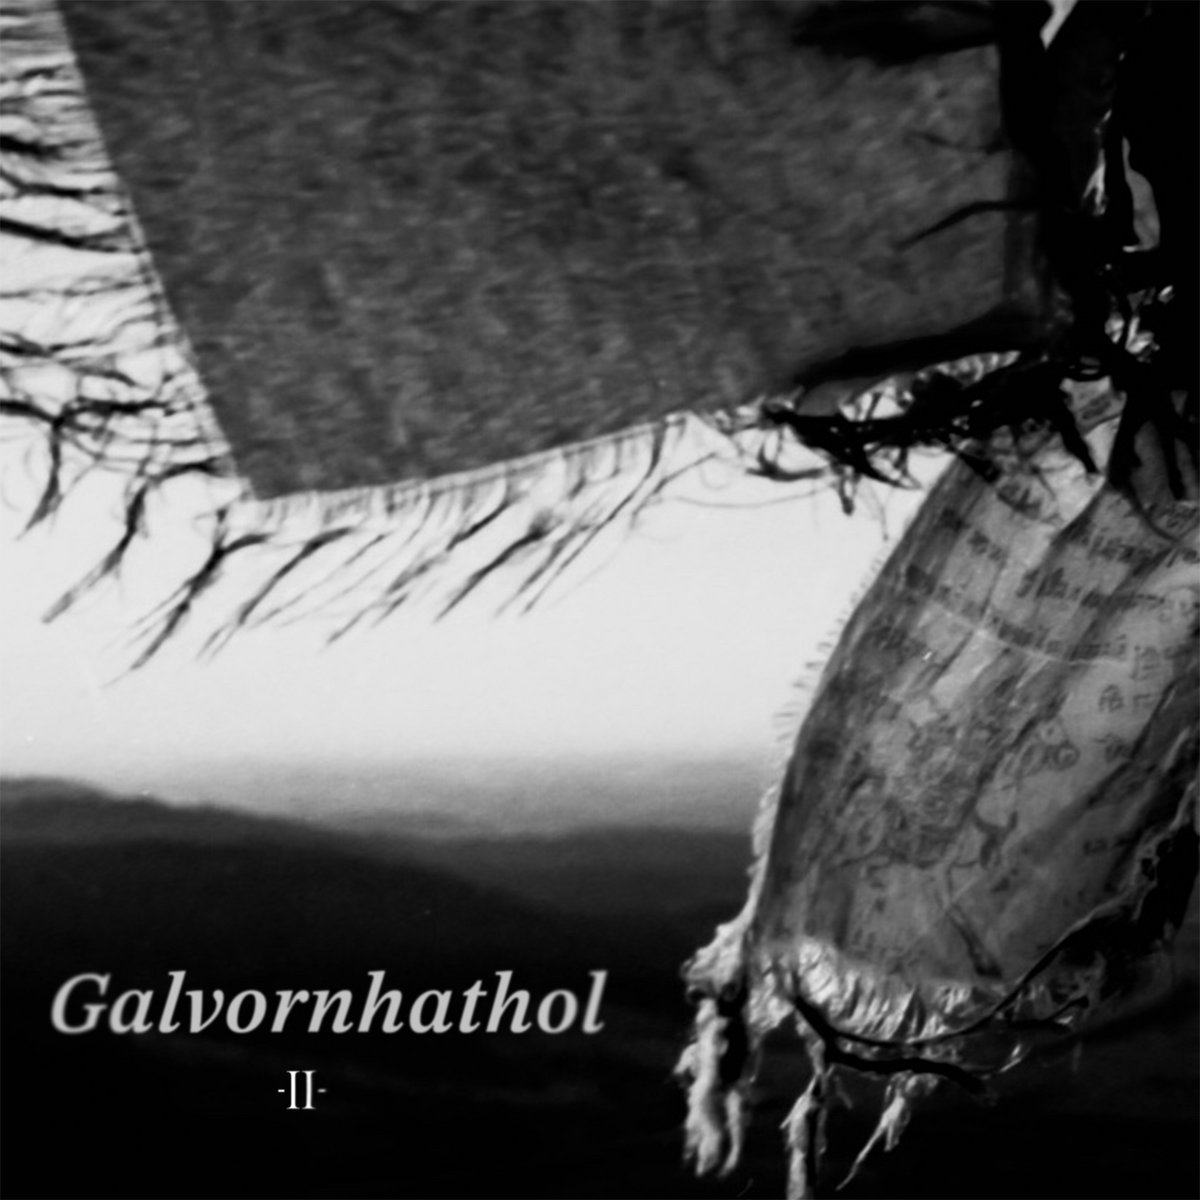 galvornhathol-veroeffentlichen-musikvideo-zum-song-eudaimonia-neues-album-ii-erhaeltlich